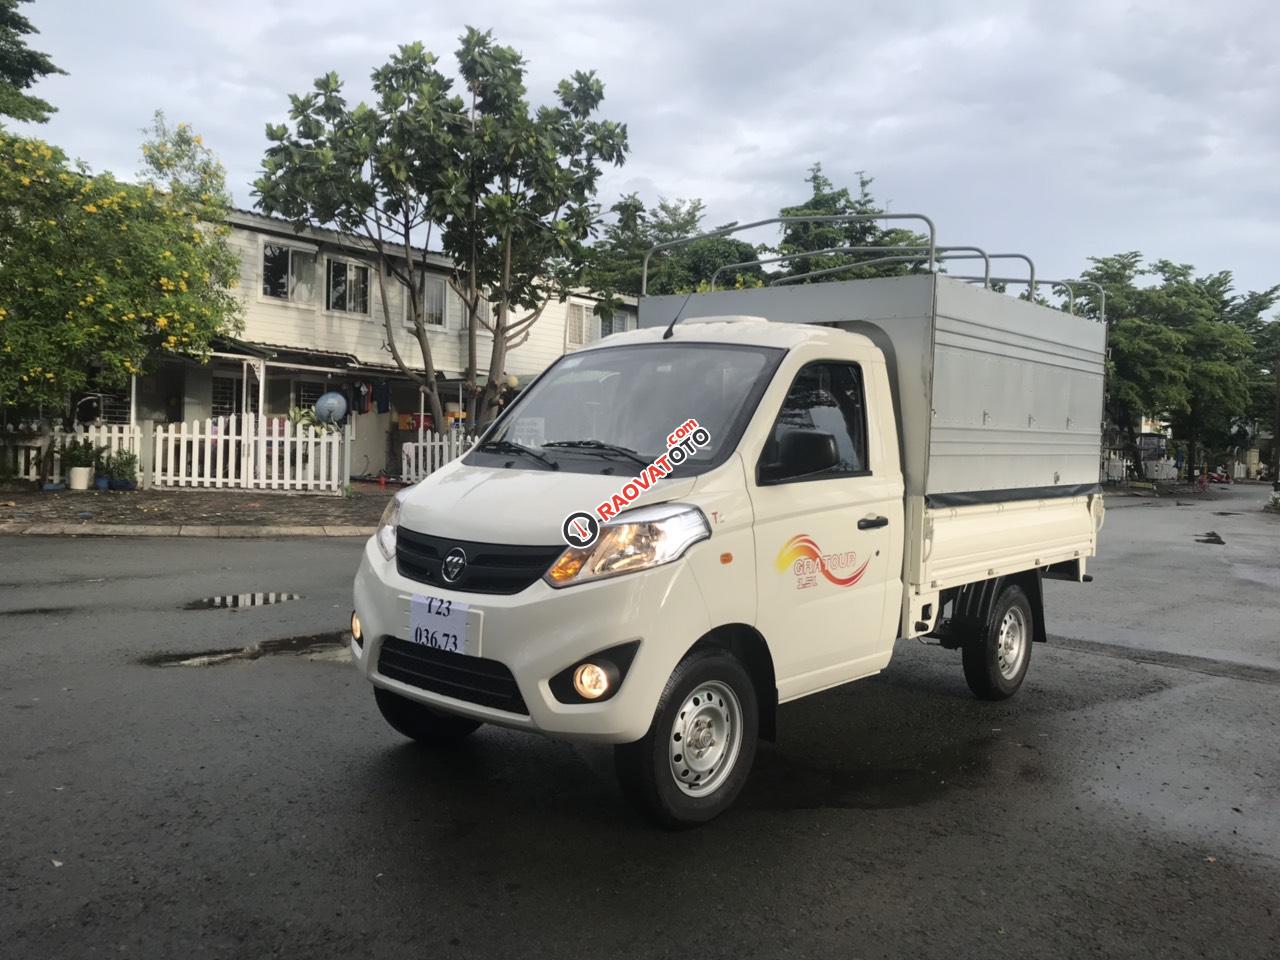 Bán xe ô tô tải, nhãn hiệu Thacco Foton 990kg, giá tốt cạnh tranh 2019-2